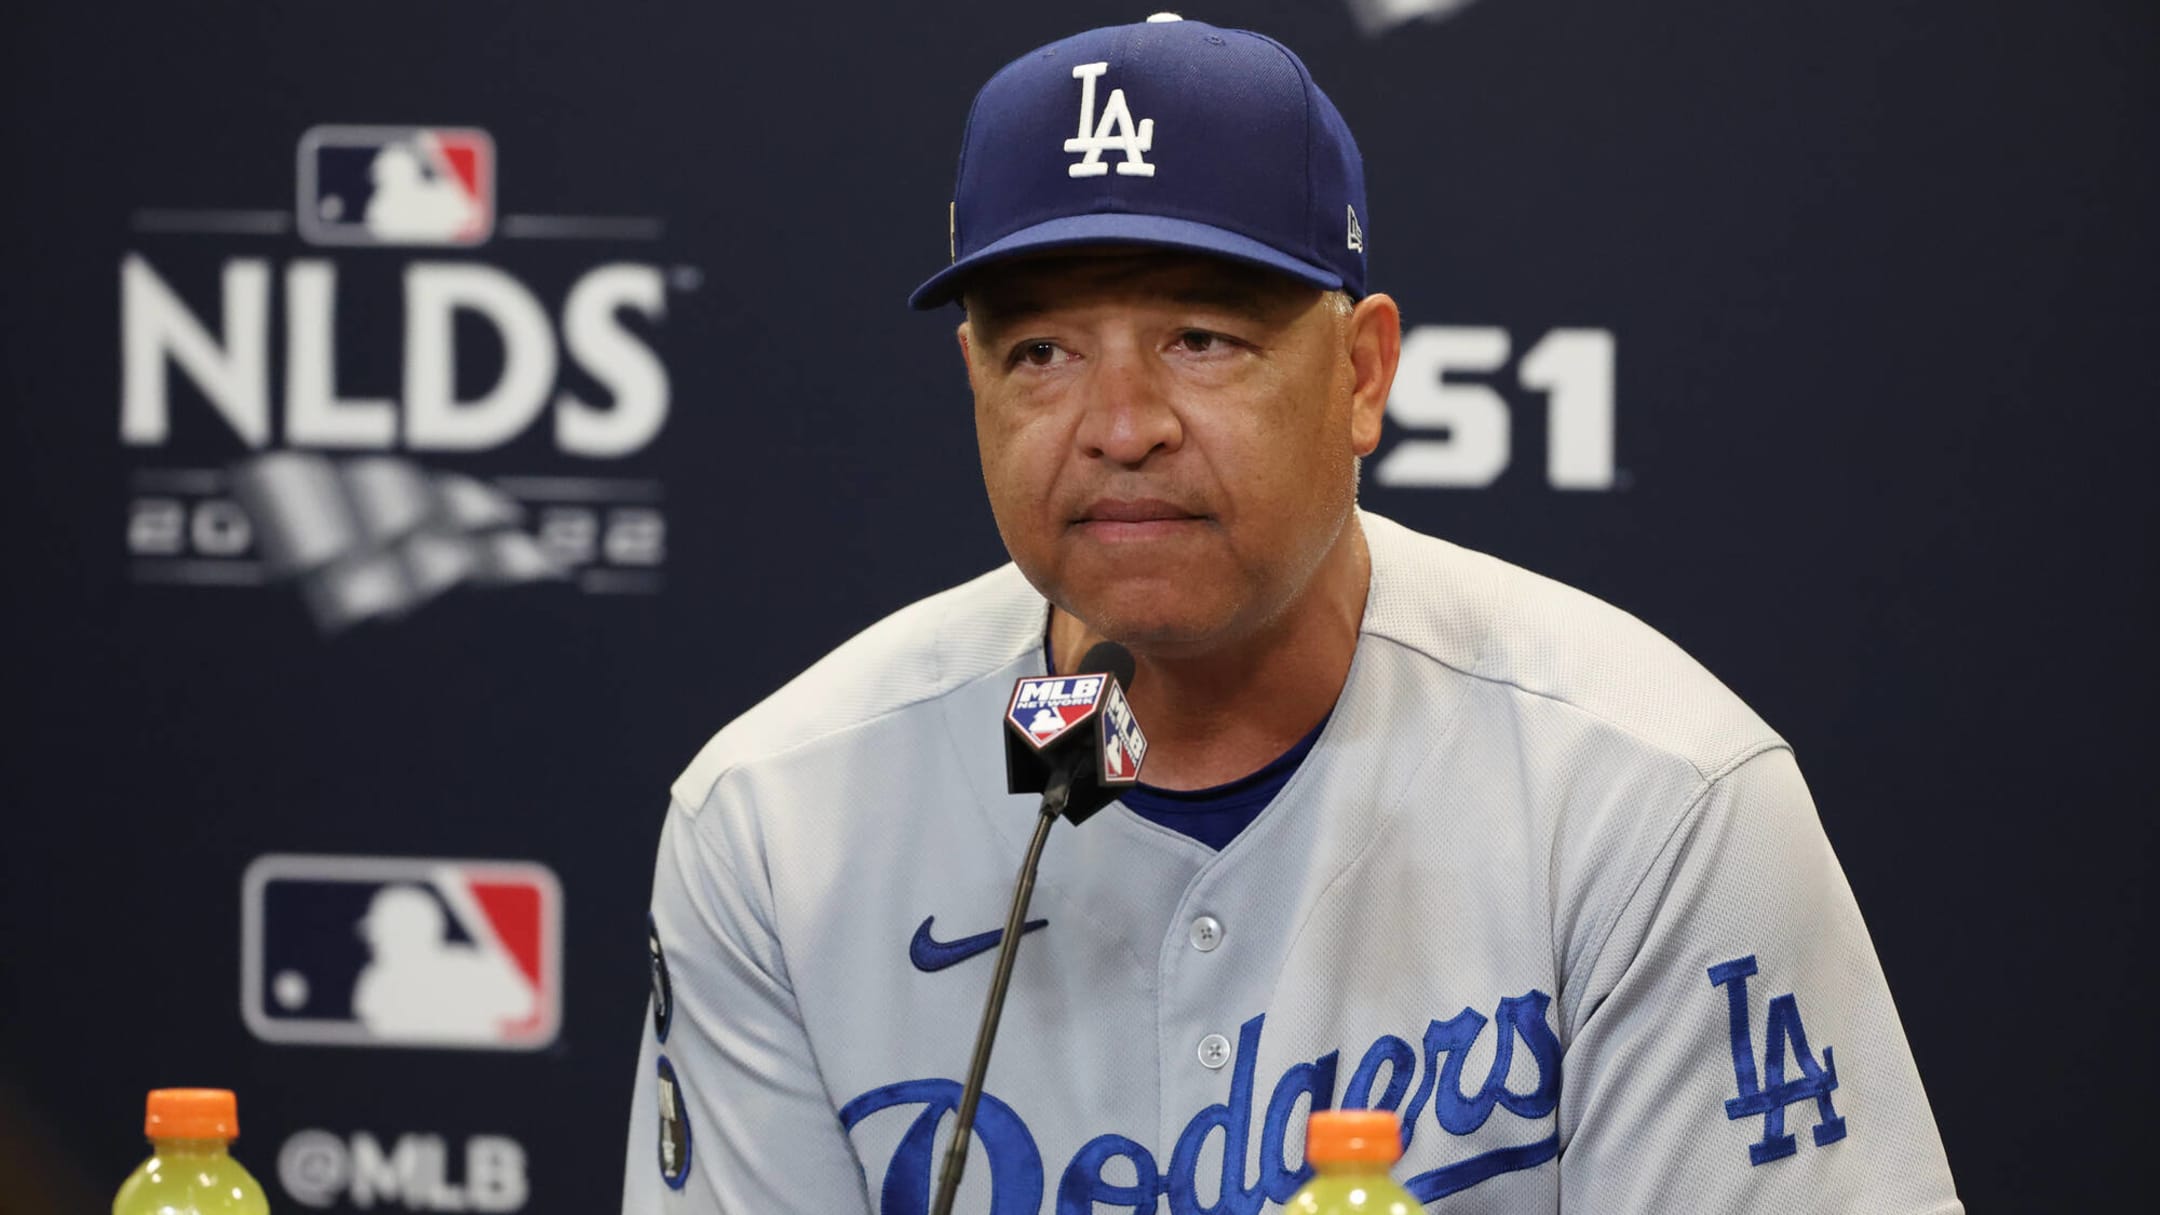 Manny Mota Receives Latino Baseball Hall Of Fame Award At